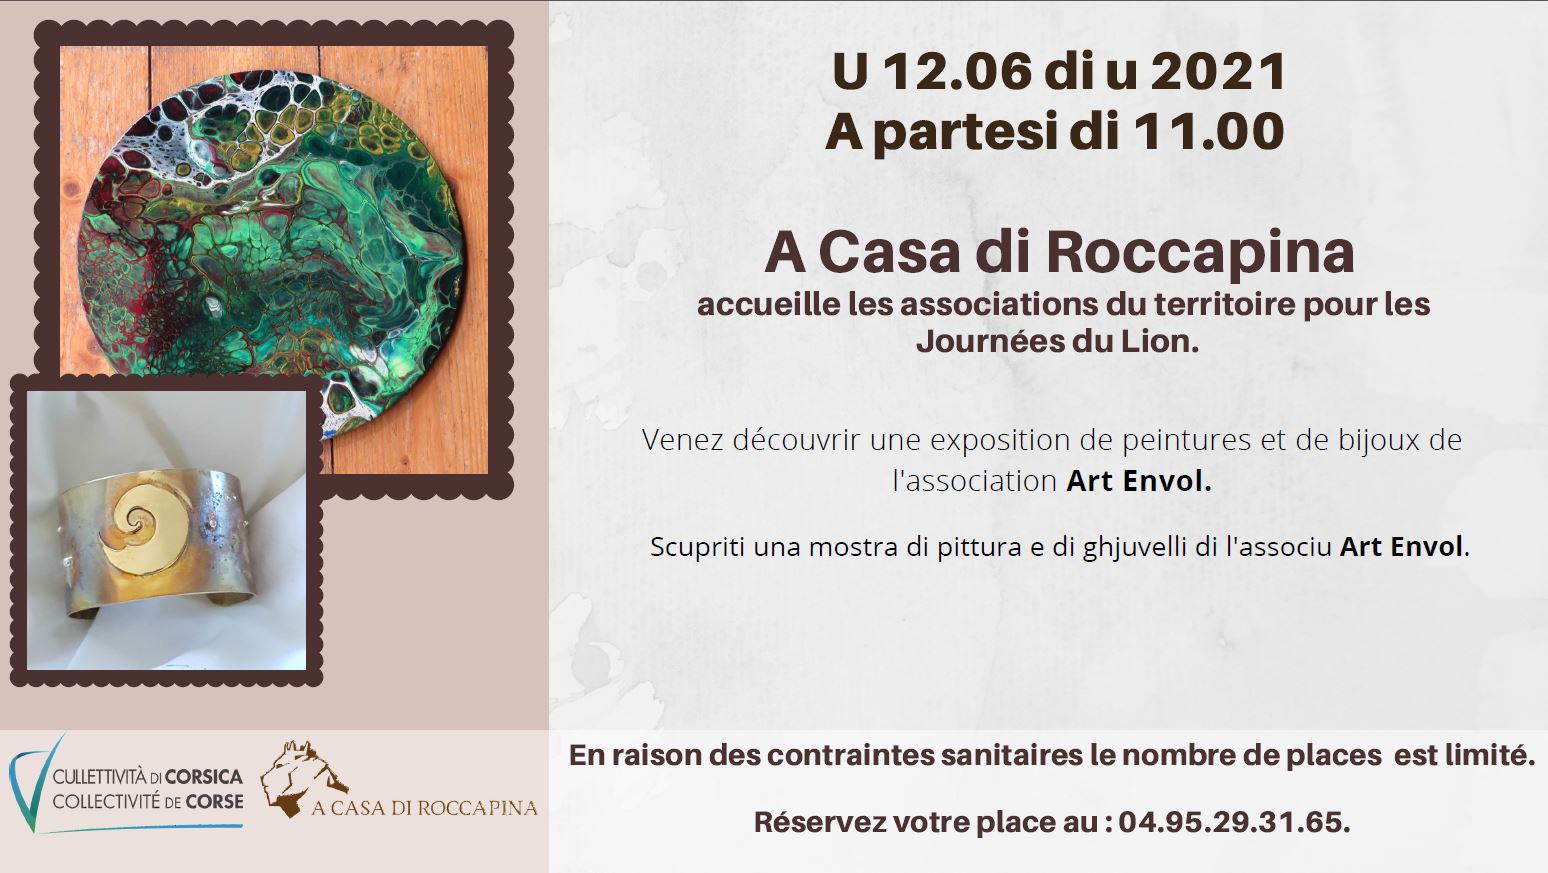 A Casa di Roccapina accueille les associations du territoire pour les Journées du Lion